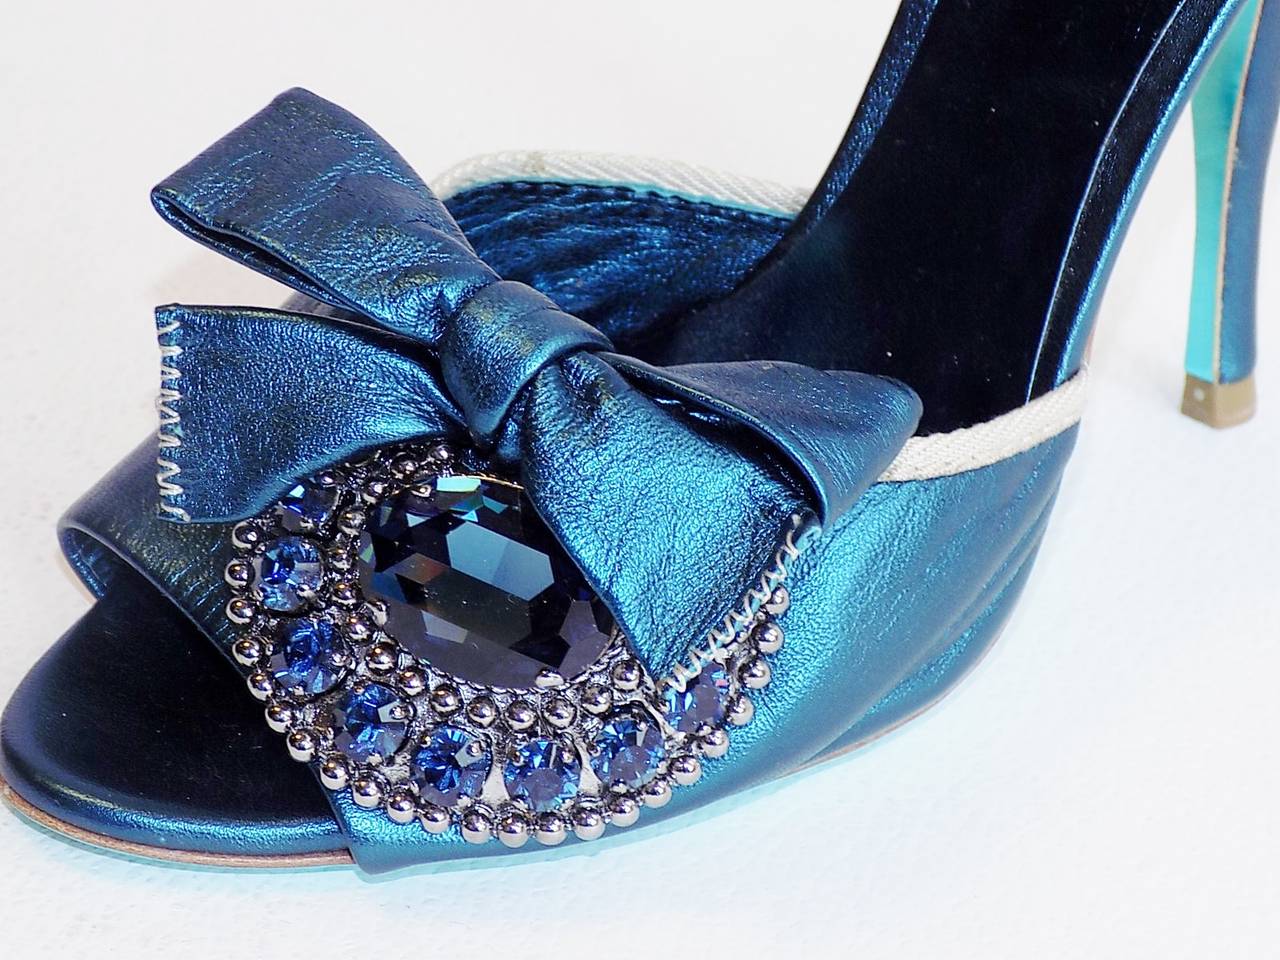 Black Miu Miu Metallic  Blue High Heel evening shoes  with large crystal